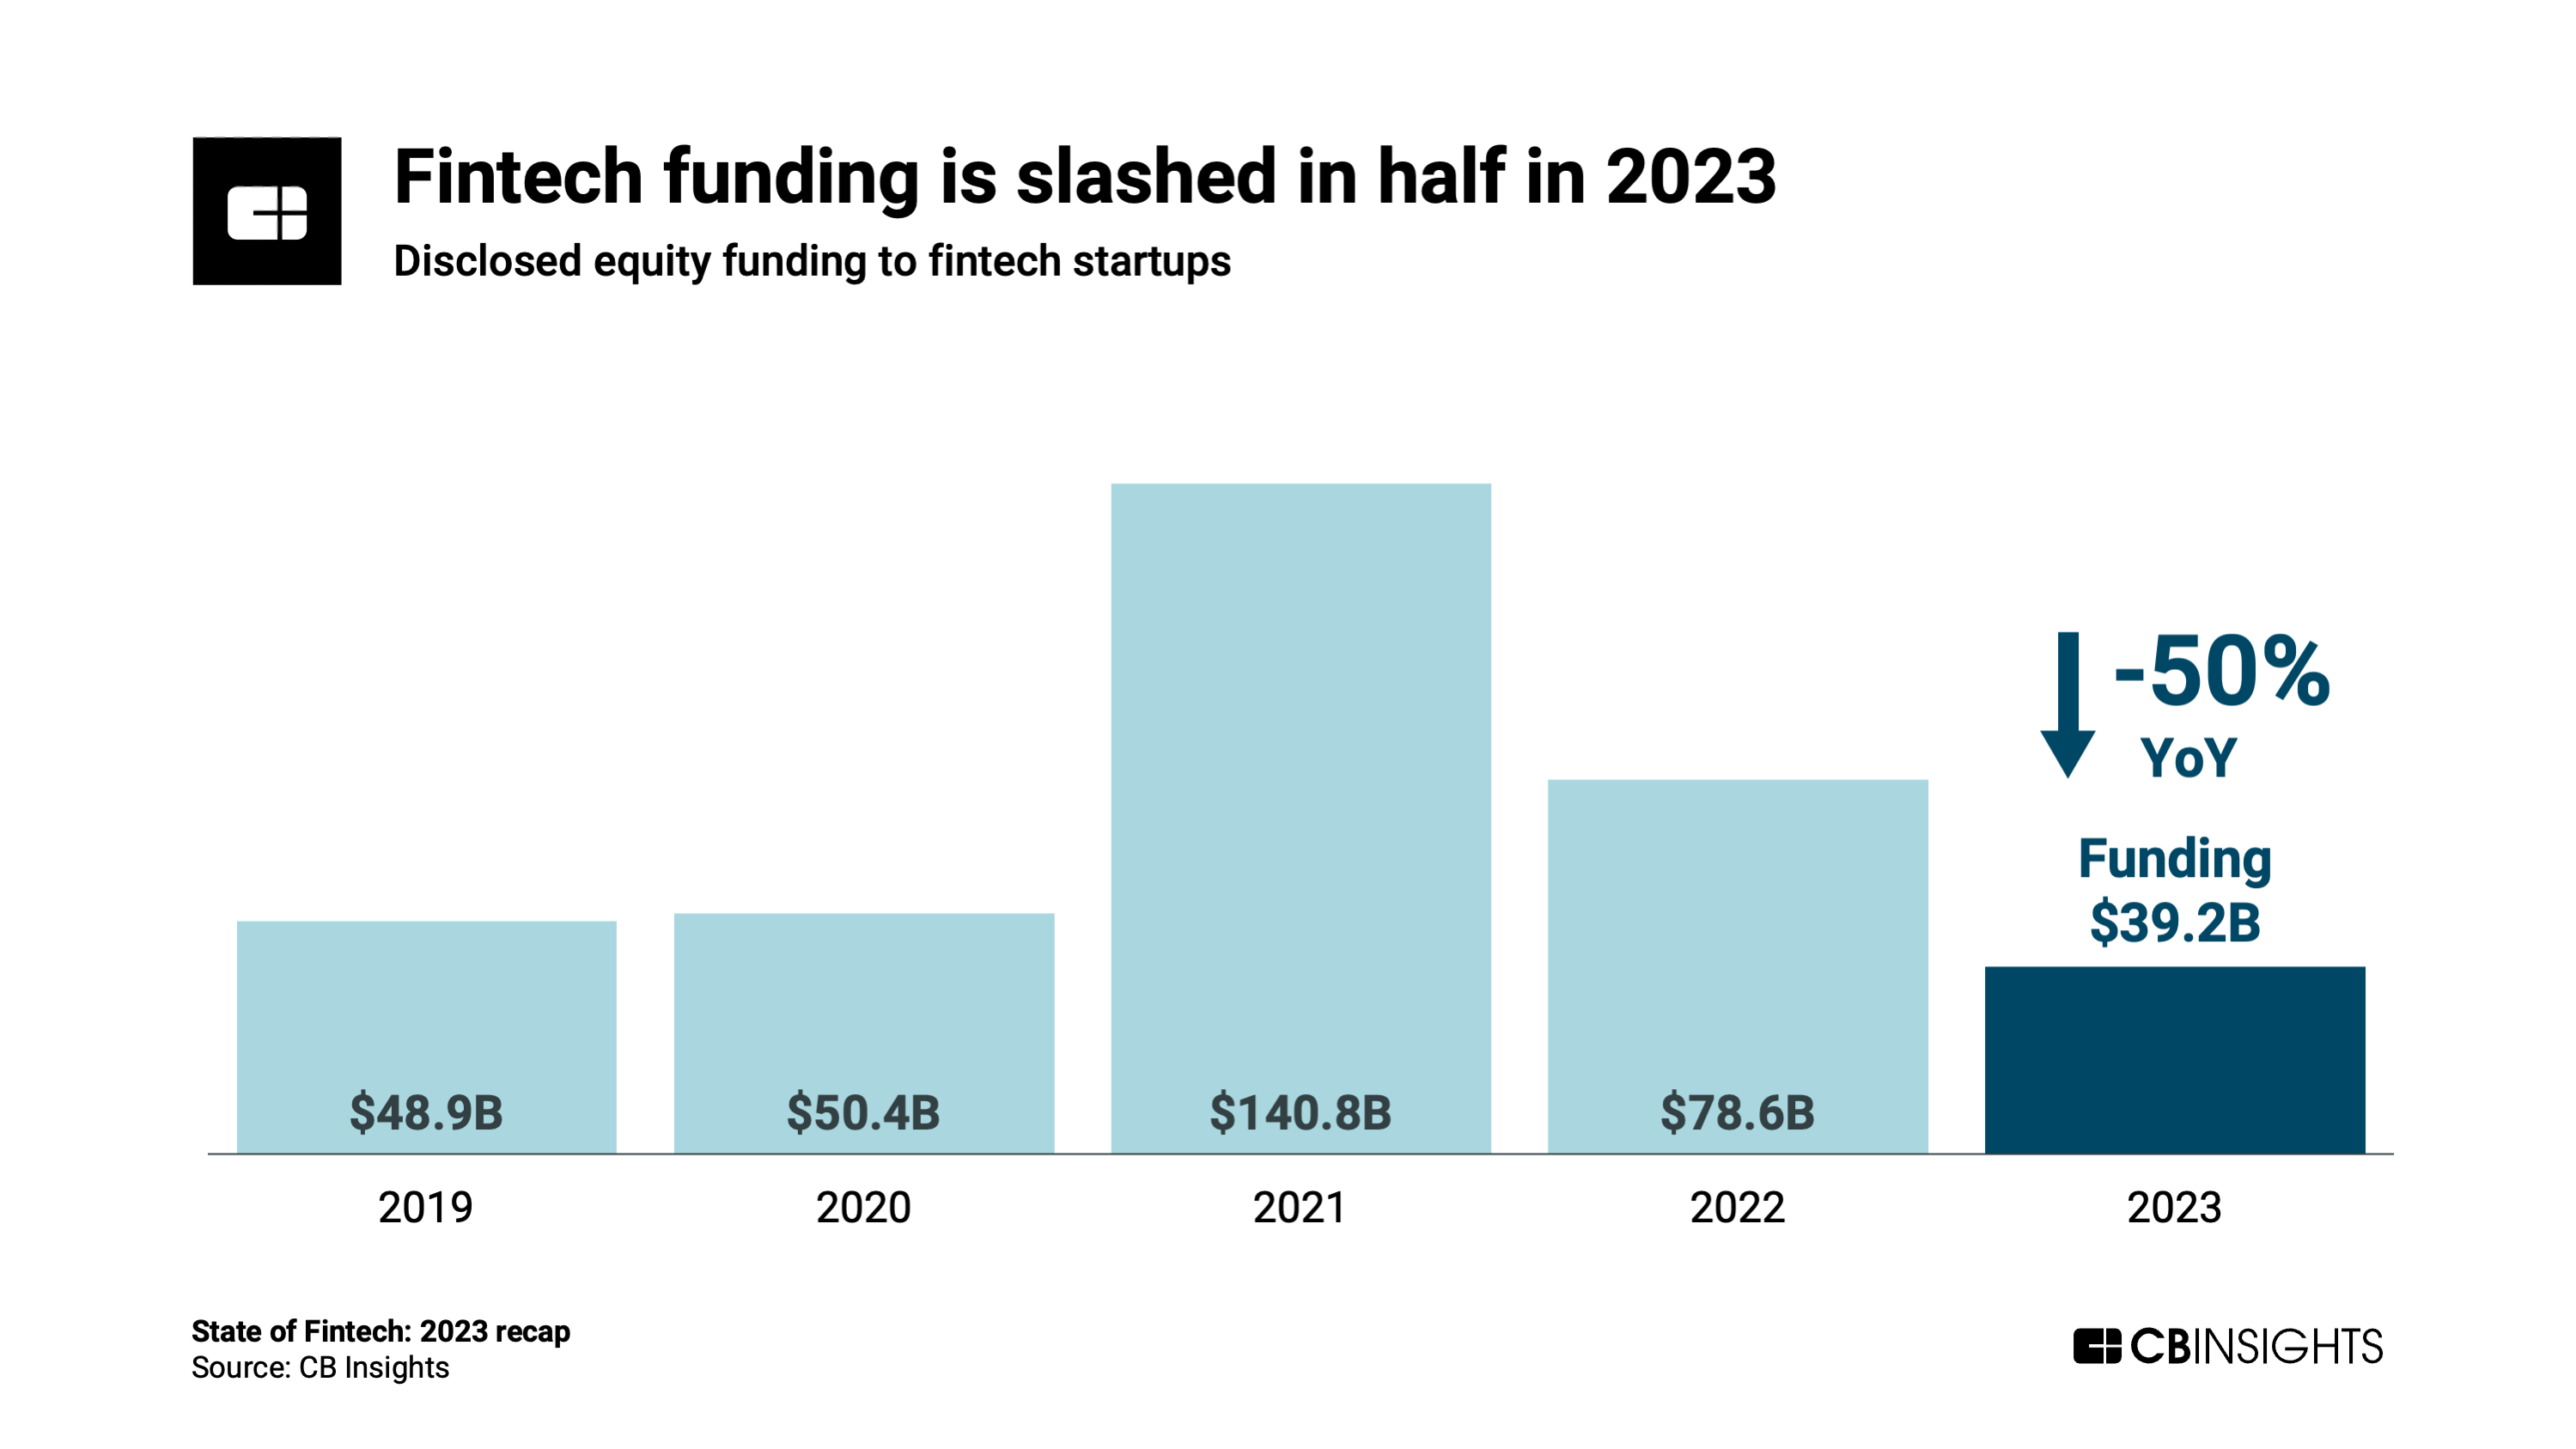 Fintech funding is slashed in half in 2023